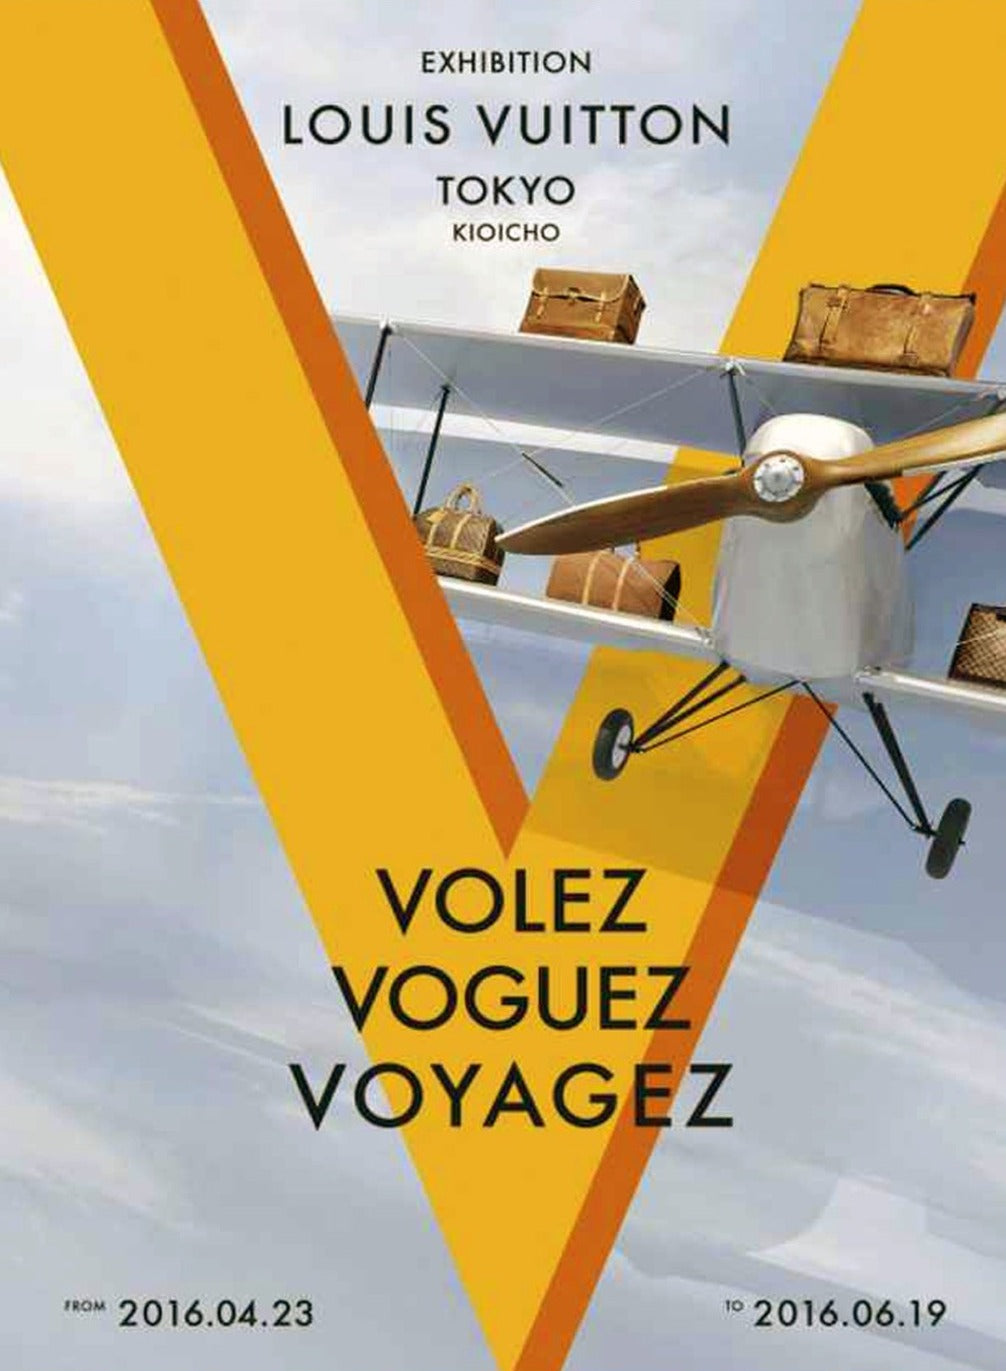 Louis Vuitton - Volez Voguez Voyagez